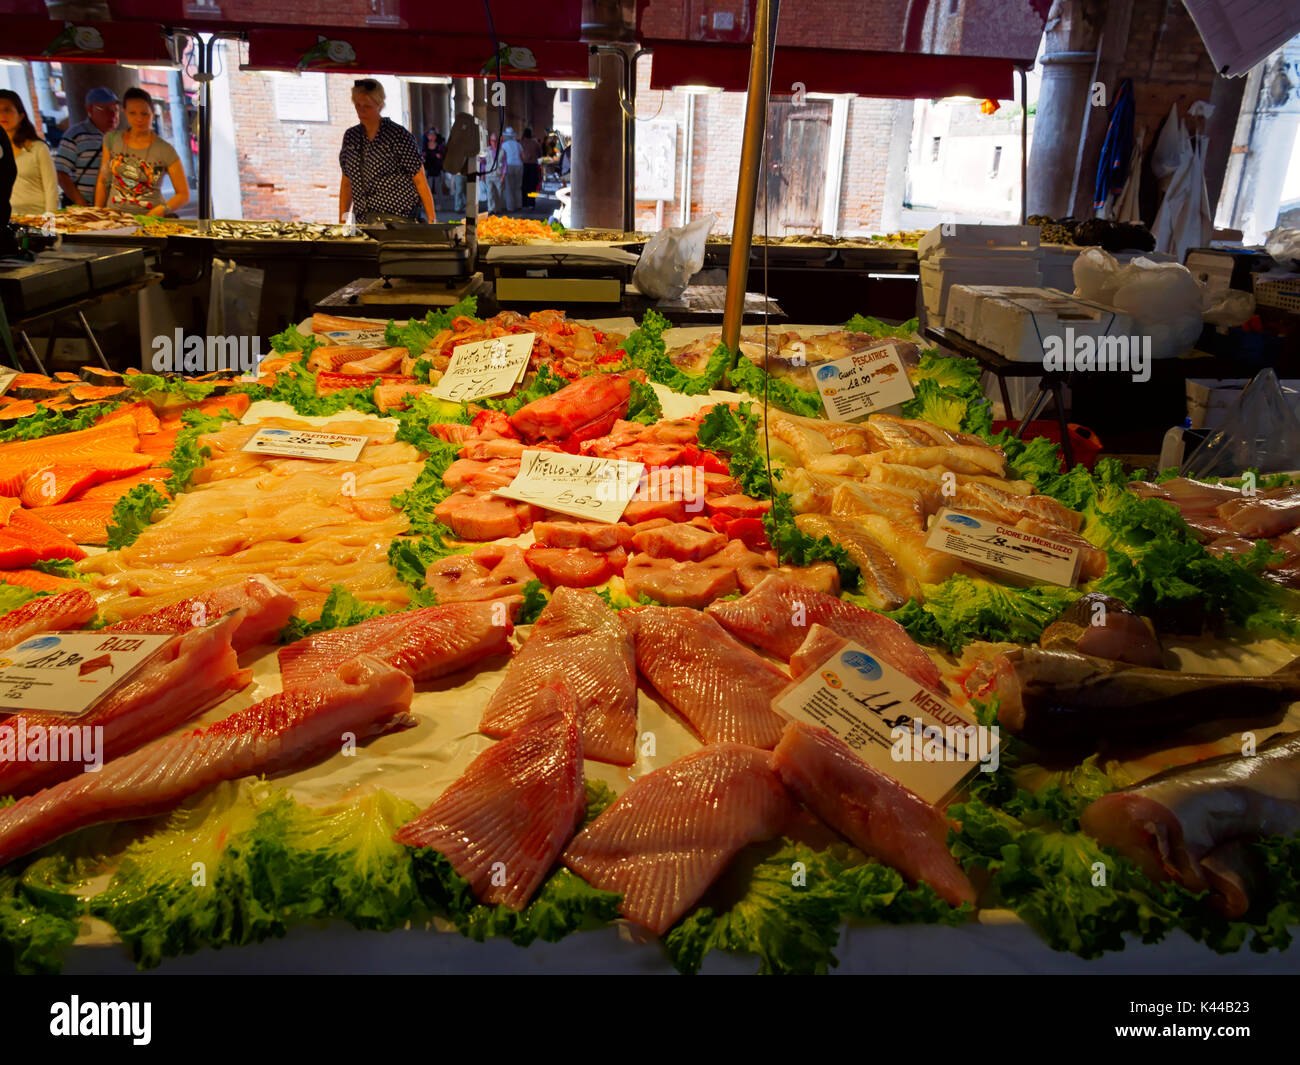 Fish Market, Venice, Italy Stock Photo